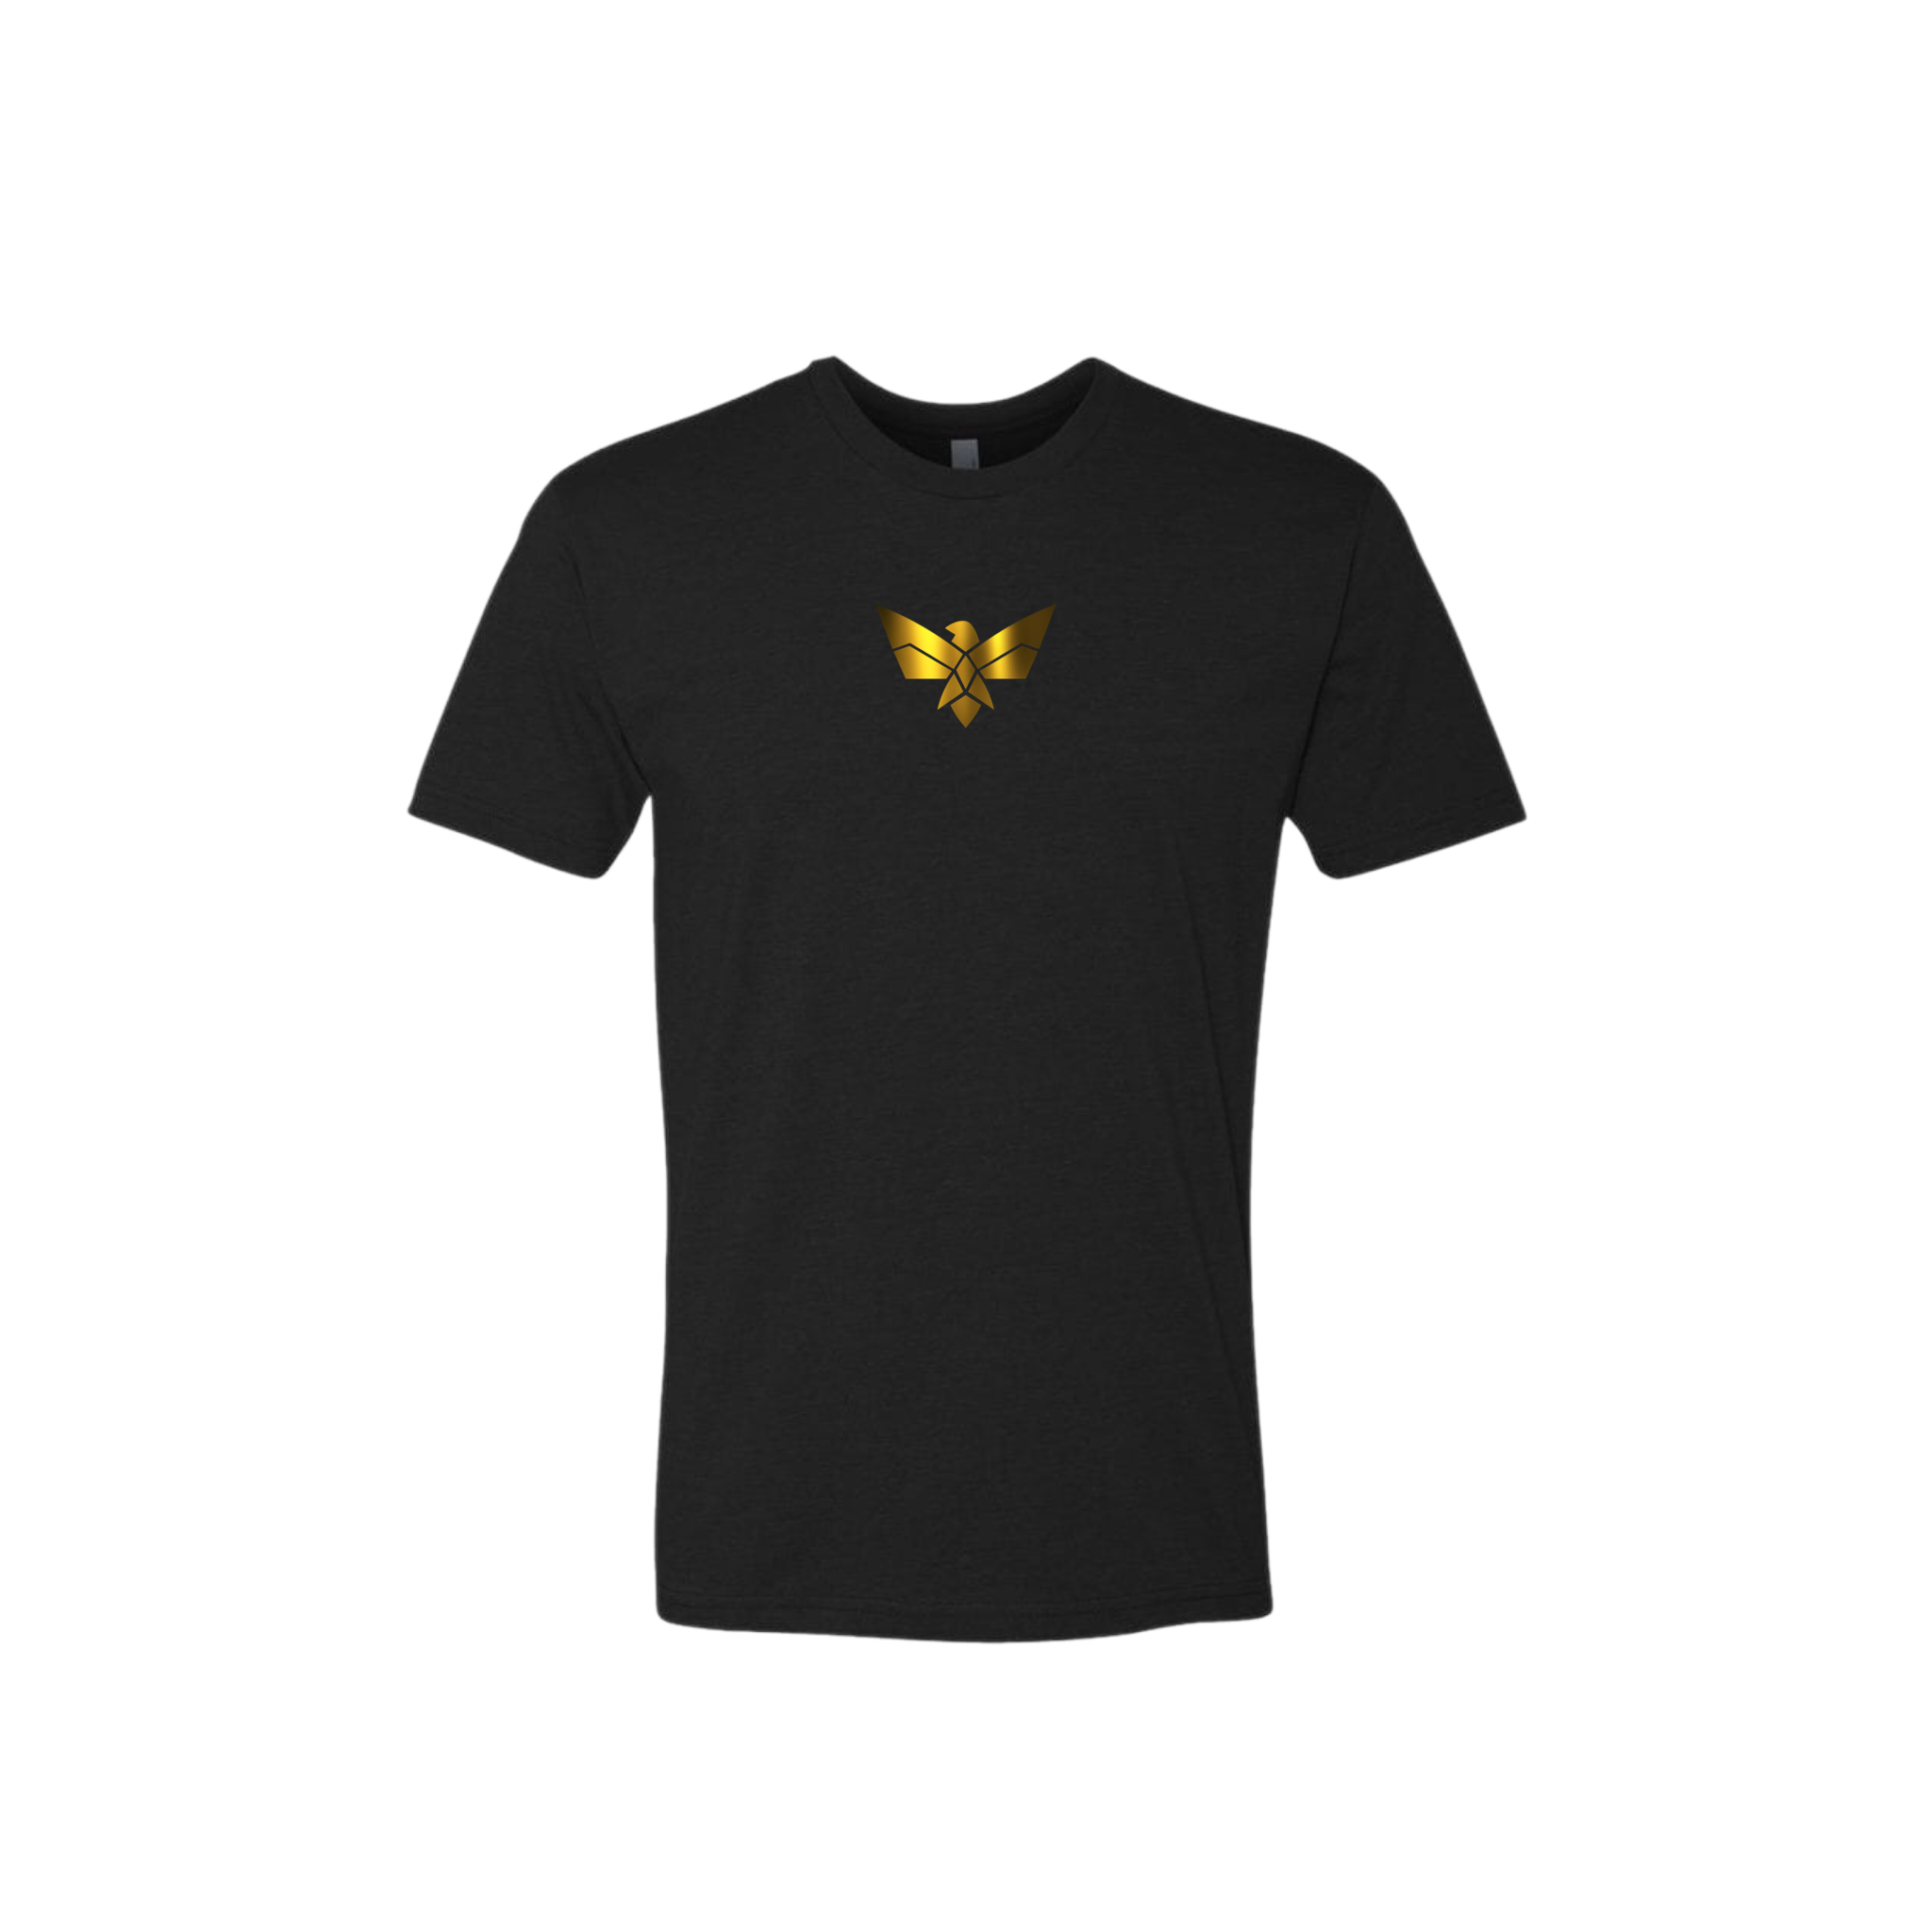 Unisex "Gold Ambition" Premium T-Shirt